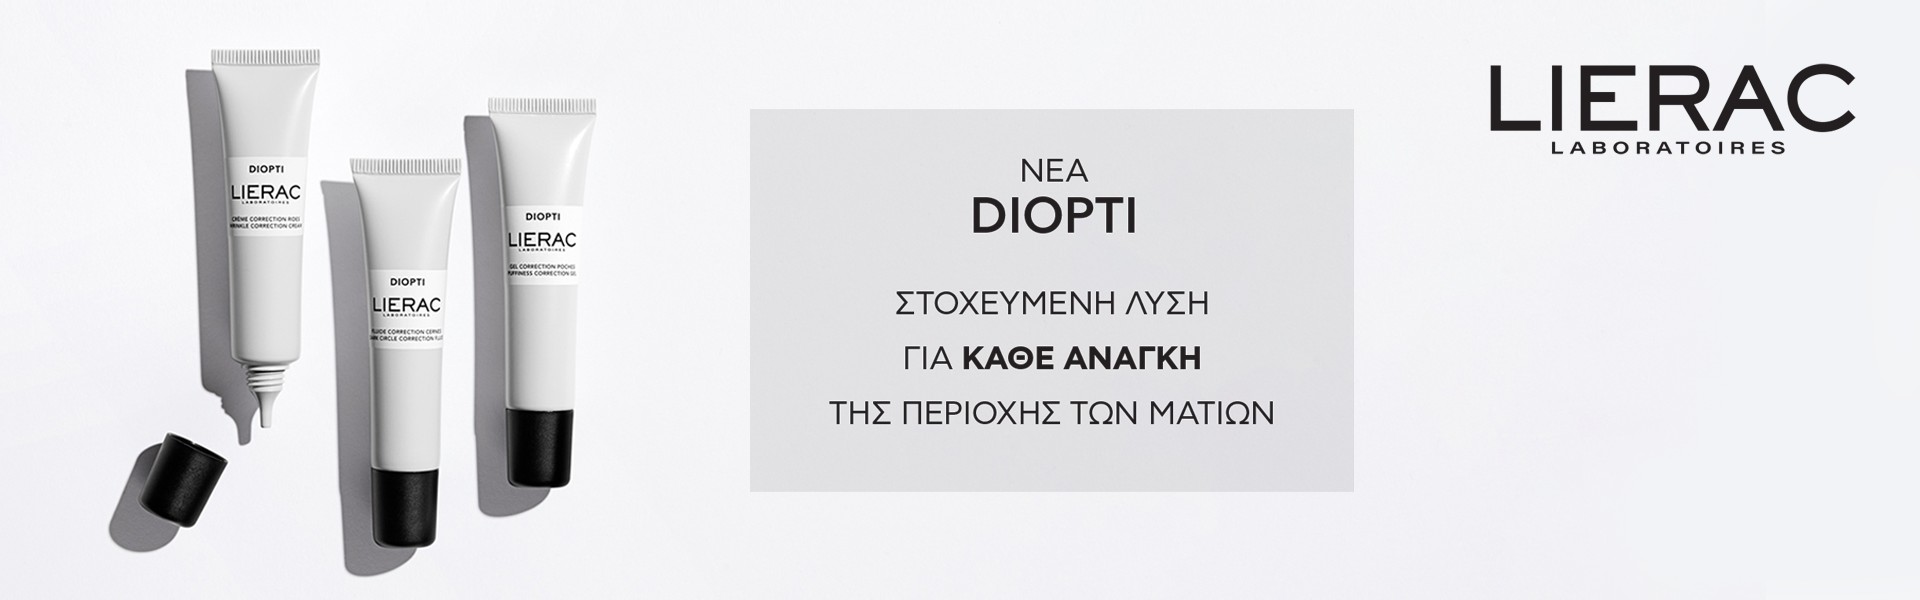 Lierac Diopti